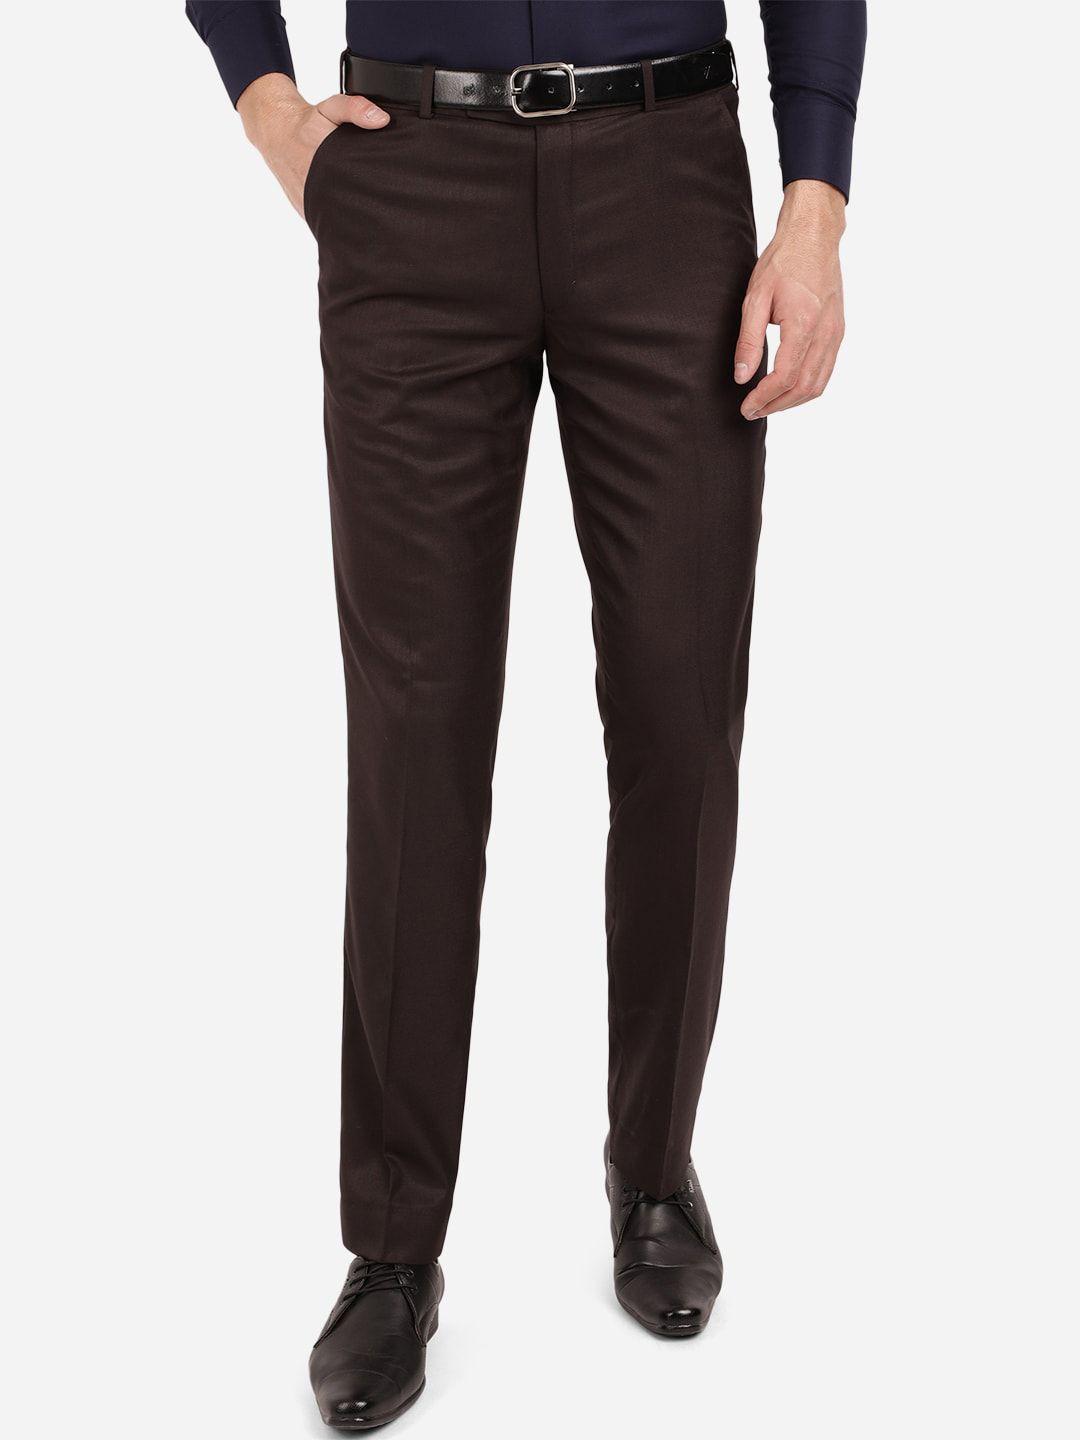 greenfibre men brown classic fit formal trouser